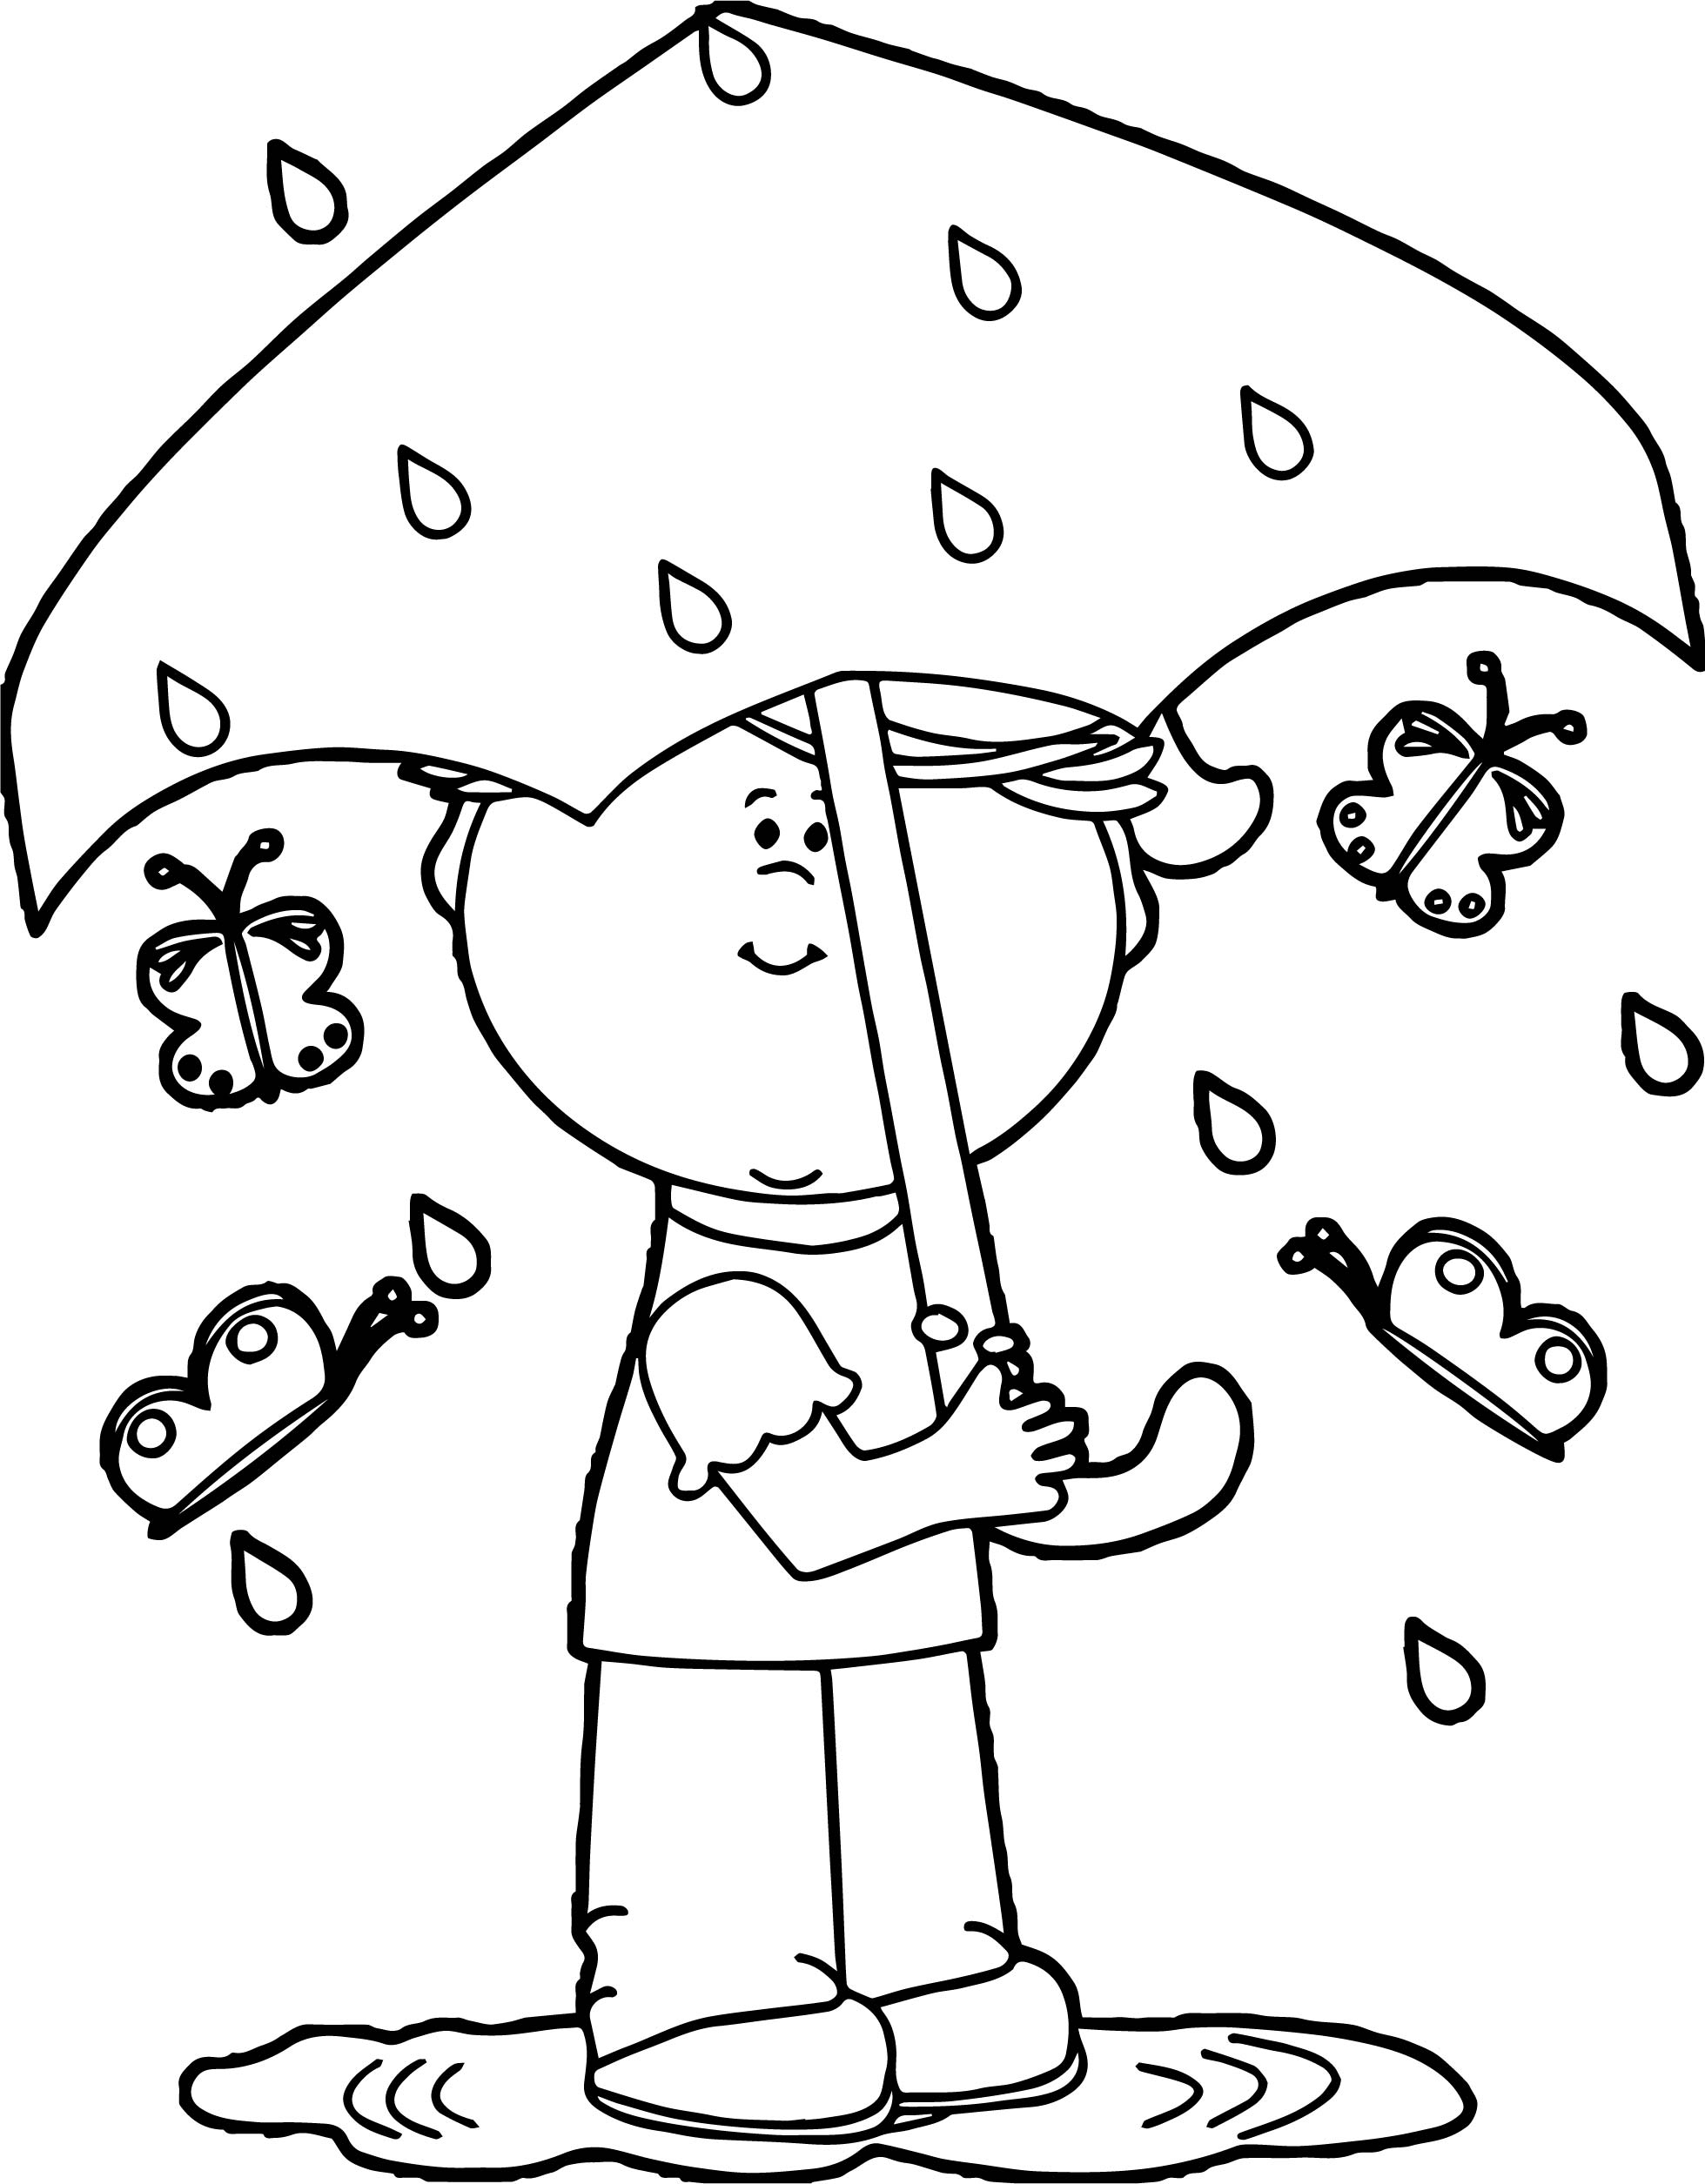 Раскраски мальчик с зонтиком распечатать